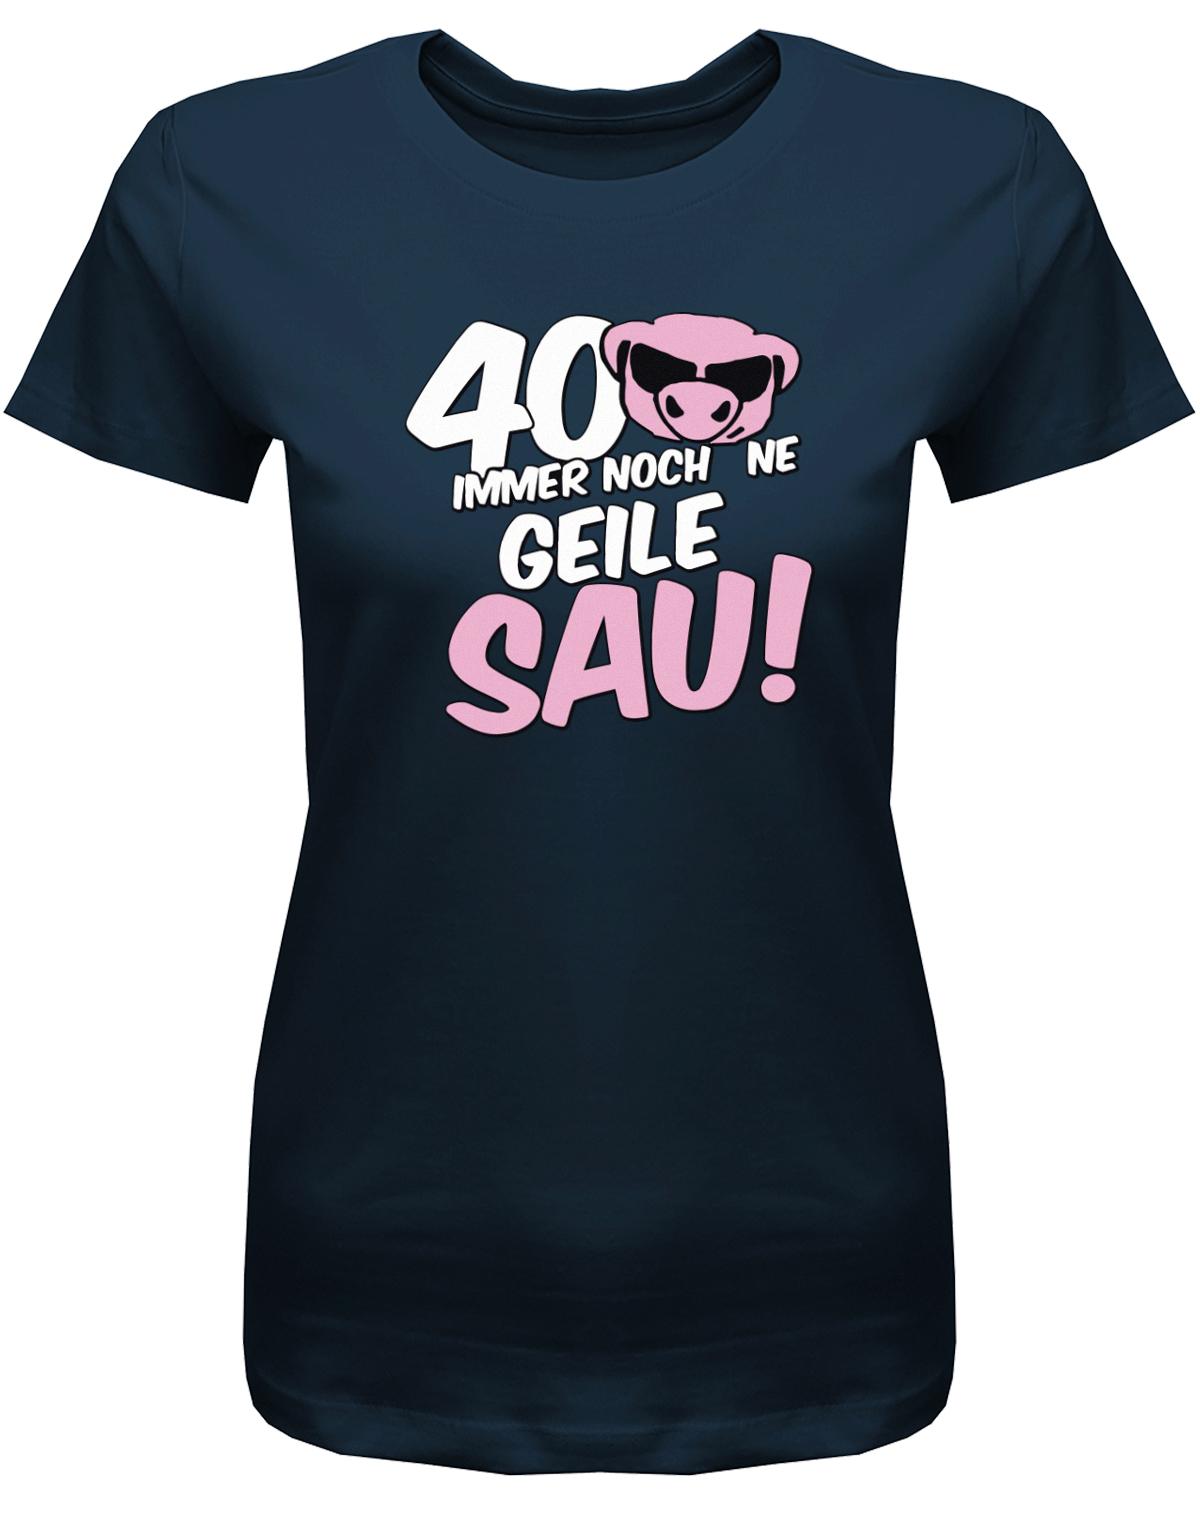 Lustiges T-Shirt zum 40 Geburtstag für die Frau Bedruckt mit 40 Immer noch 'ne geile Sau! Sau mit Sonnenbrille Navy